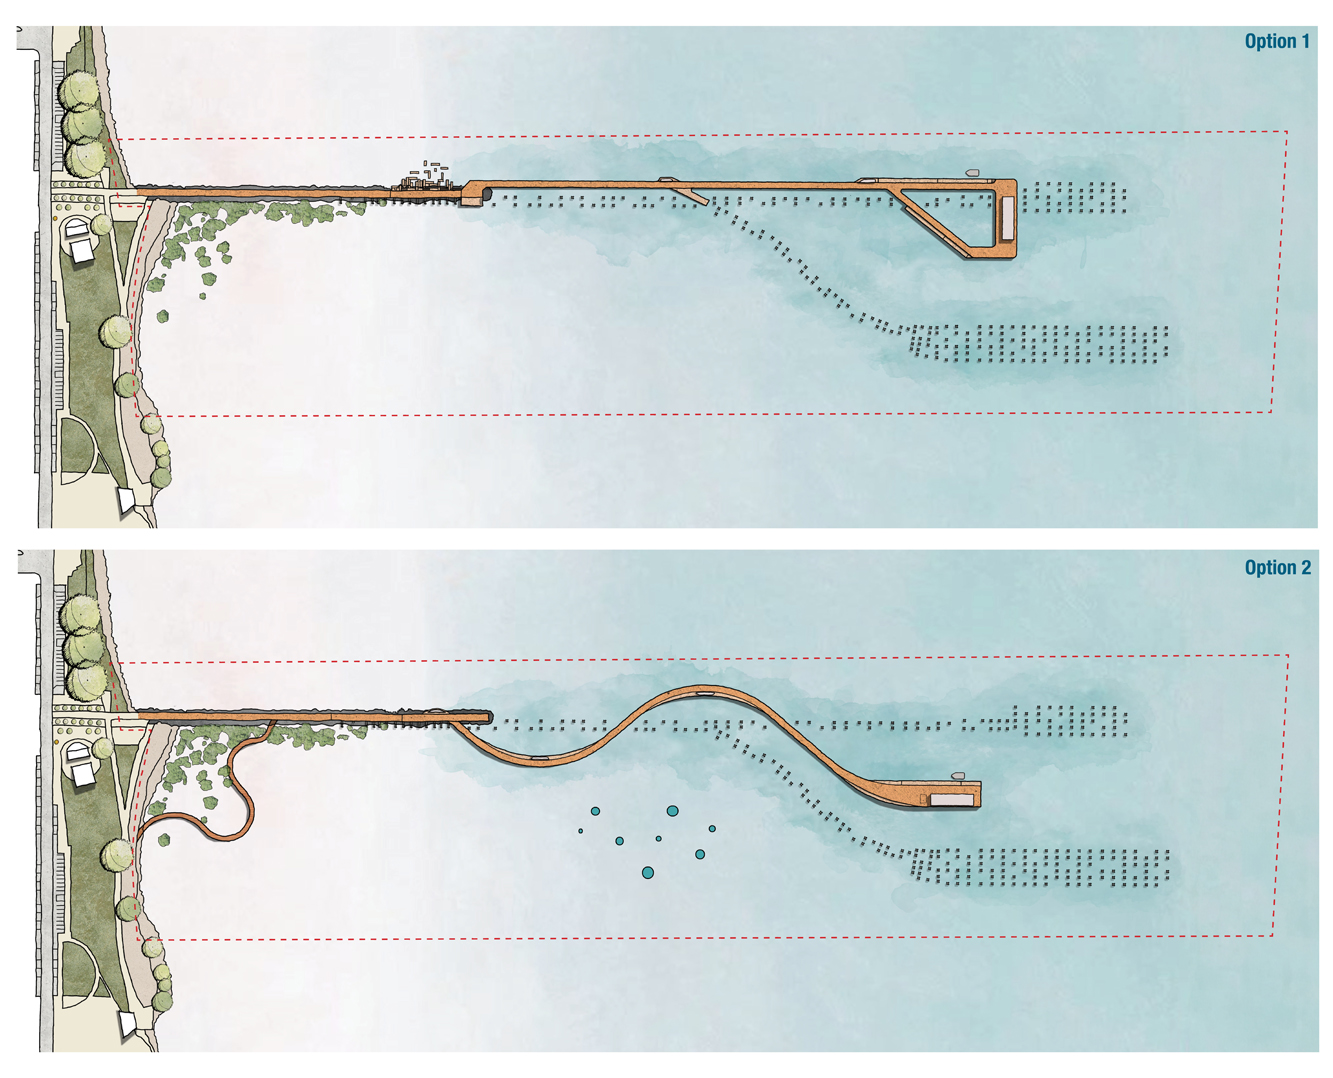 Concept designs of a future jetty